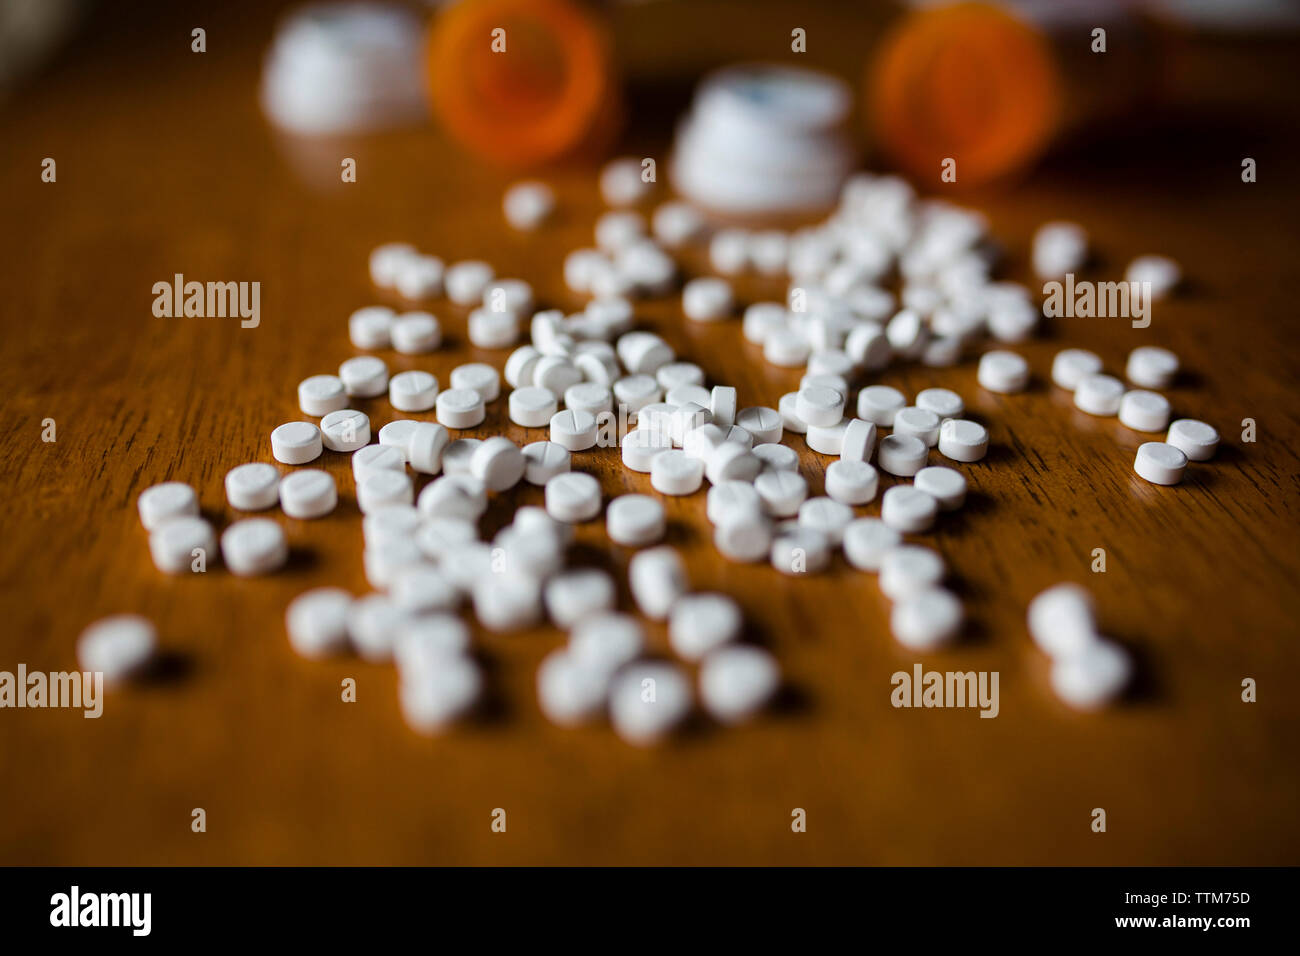 Close-up of pills et les bouteilles sur la table Banque D'Images